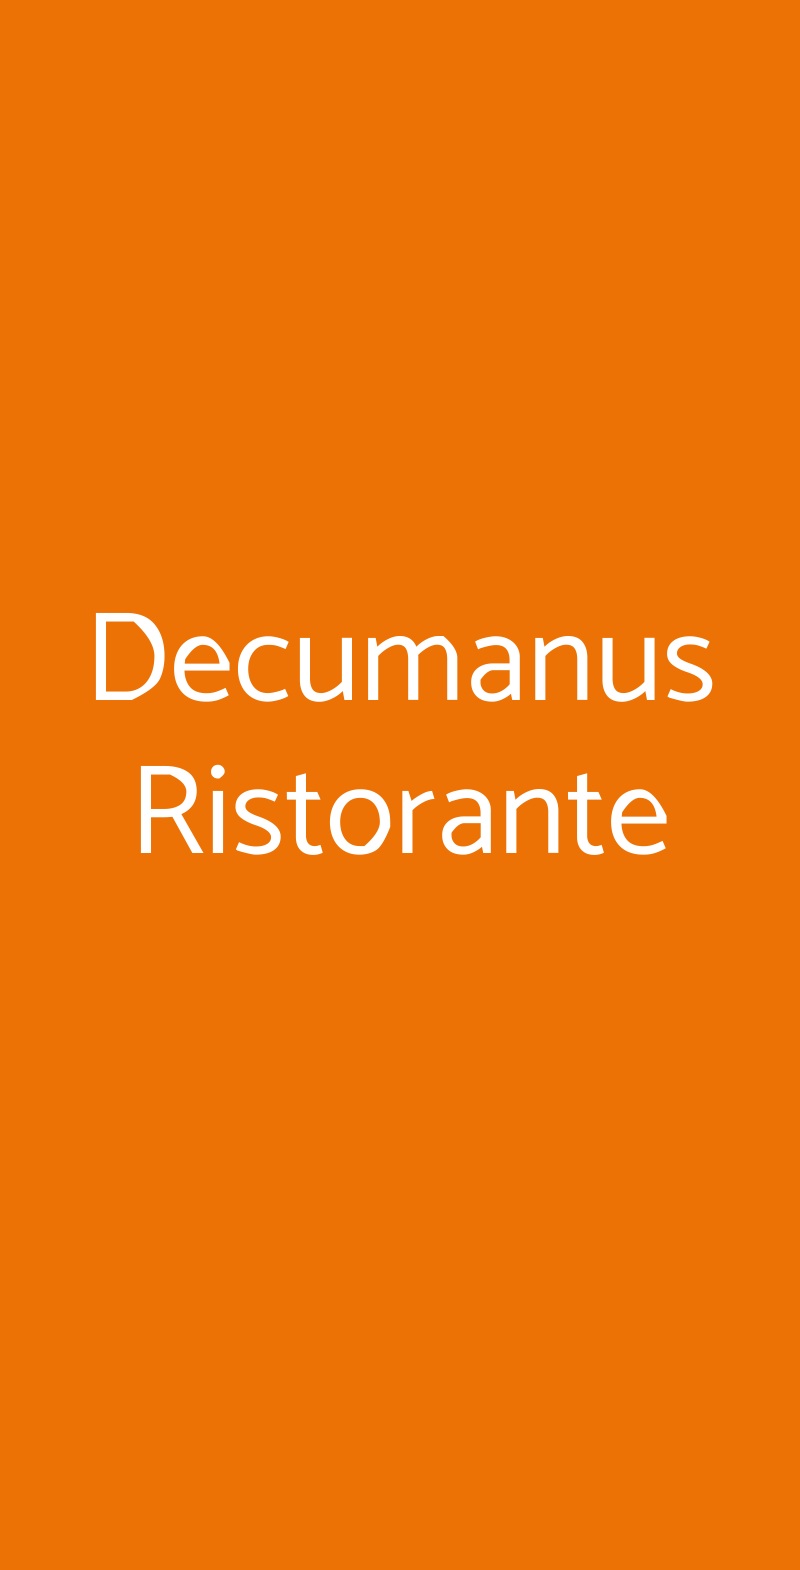 Decumanus Ristorante Firenze menù 1 pagina